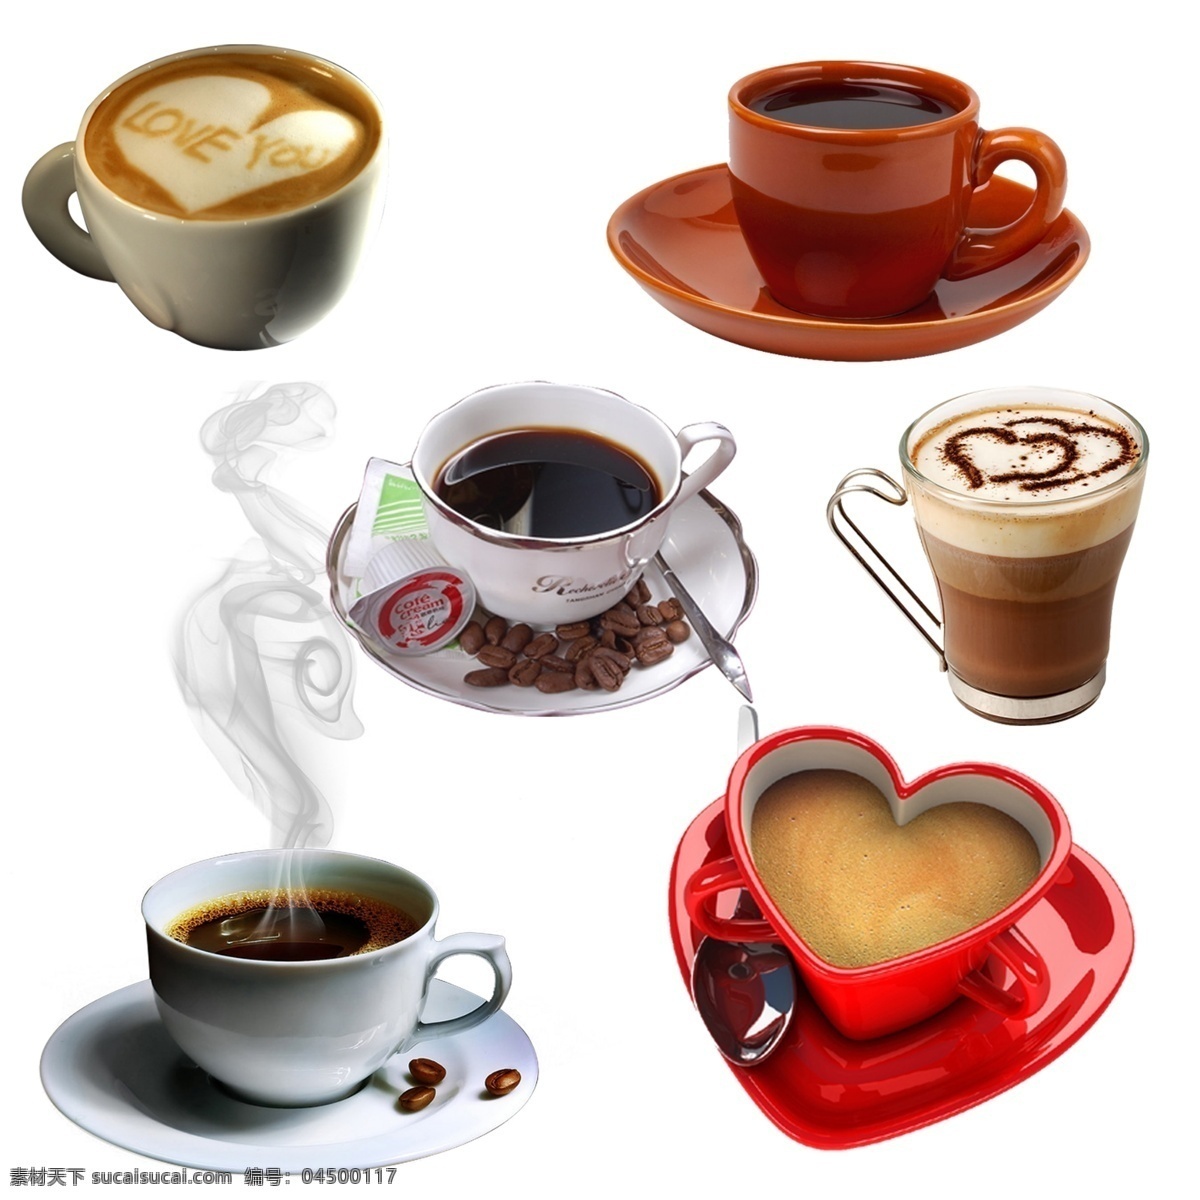 热奶咖啡 喝 热咖啡 享受 冰咖啡 黑咖啡 白咖啡 咖啡机 咖啡店 咖啡因 咖啡馆 热饮 饮料 杯子 咖啡杯 咖啡拉花 下午茶